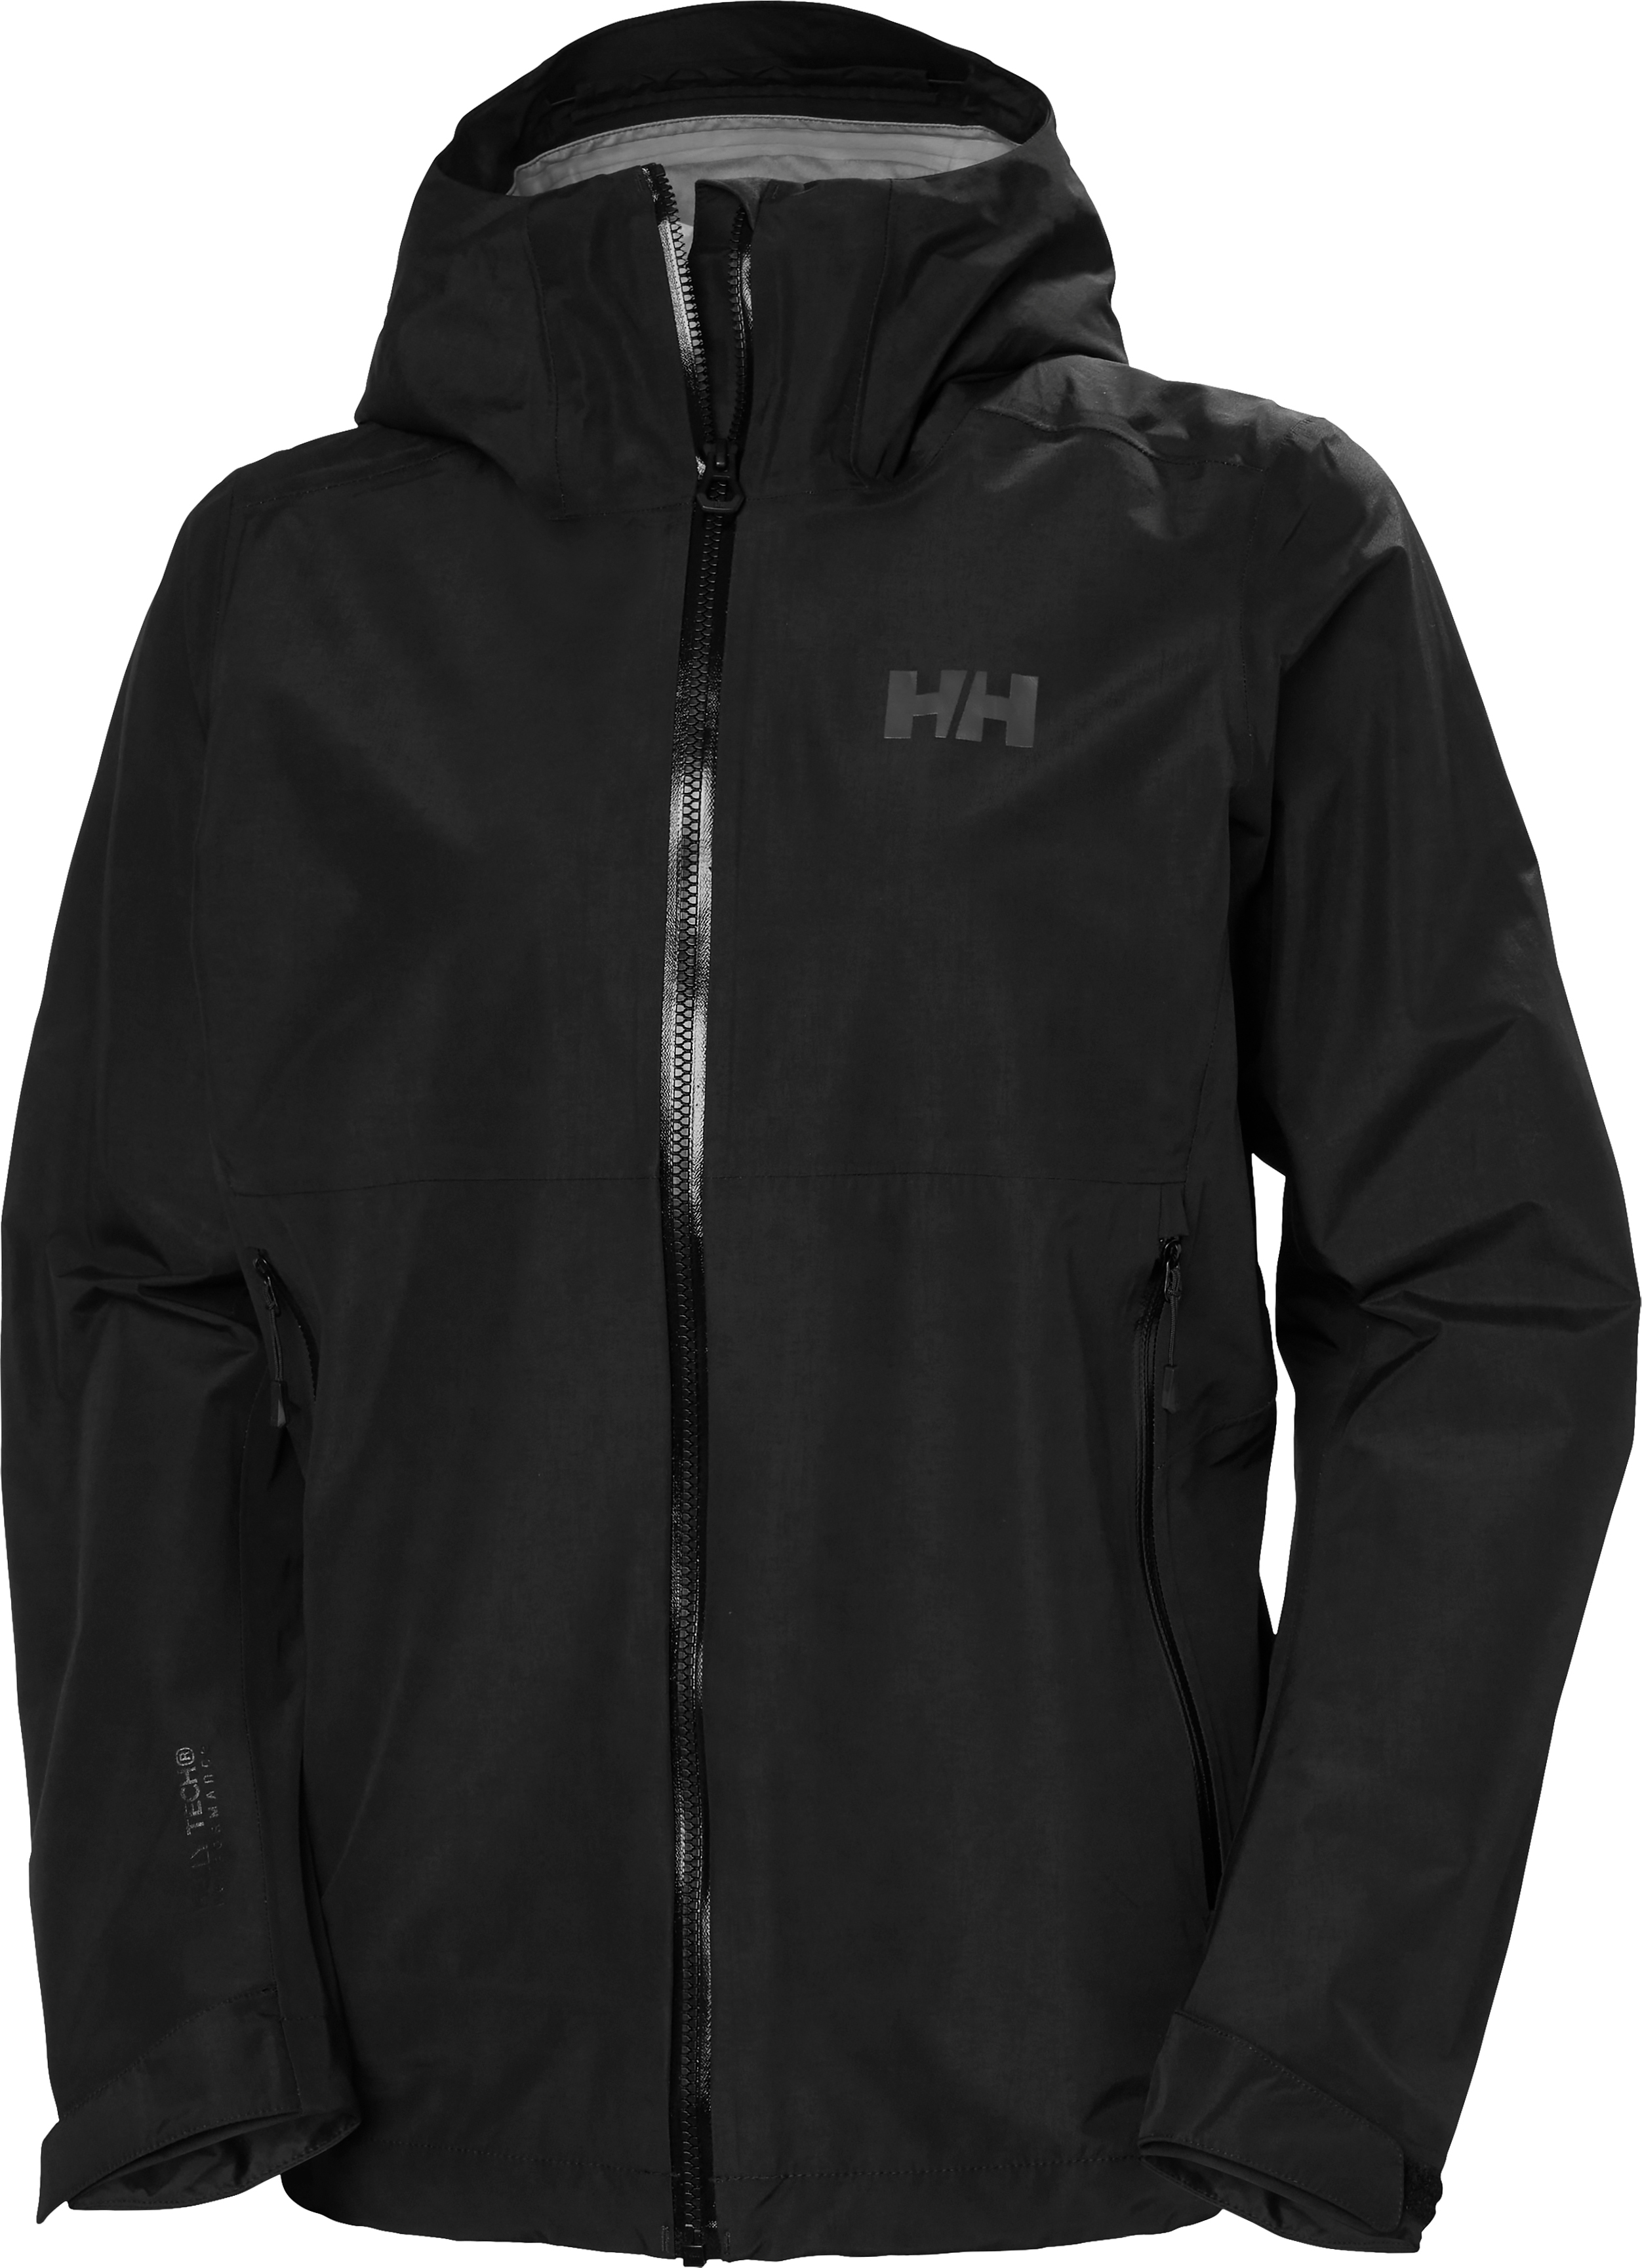 Helly Hansen Women’s Blaze 3L Shell Jacket Black